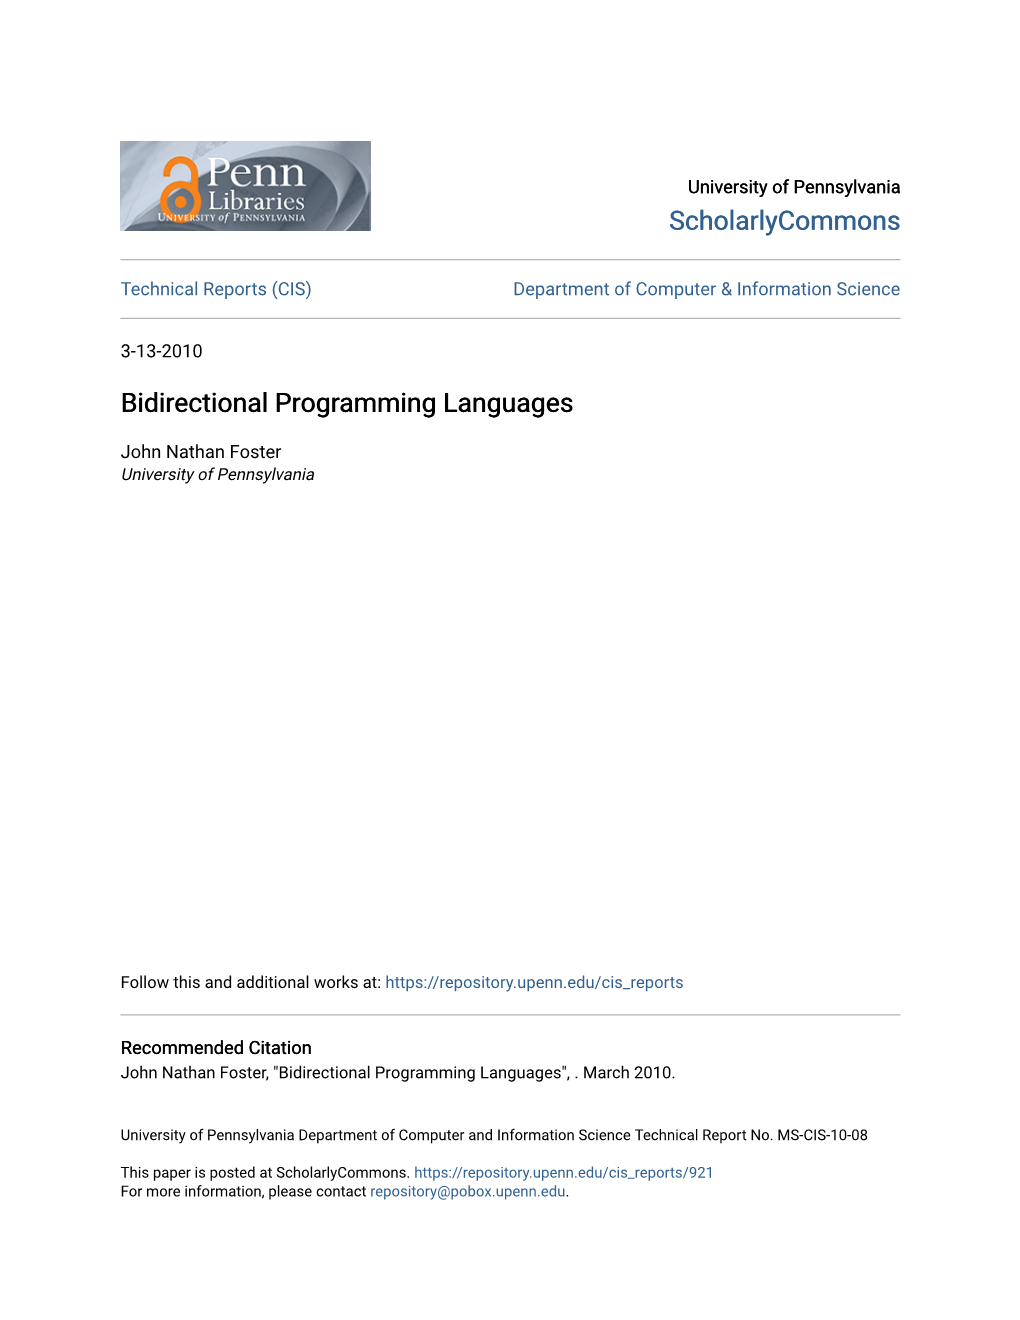 Bidirectional Programming Languages